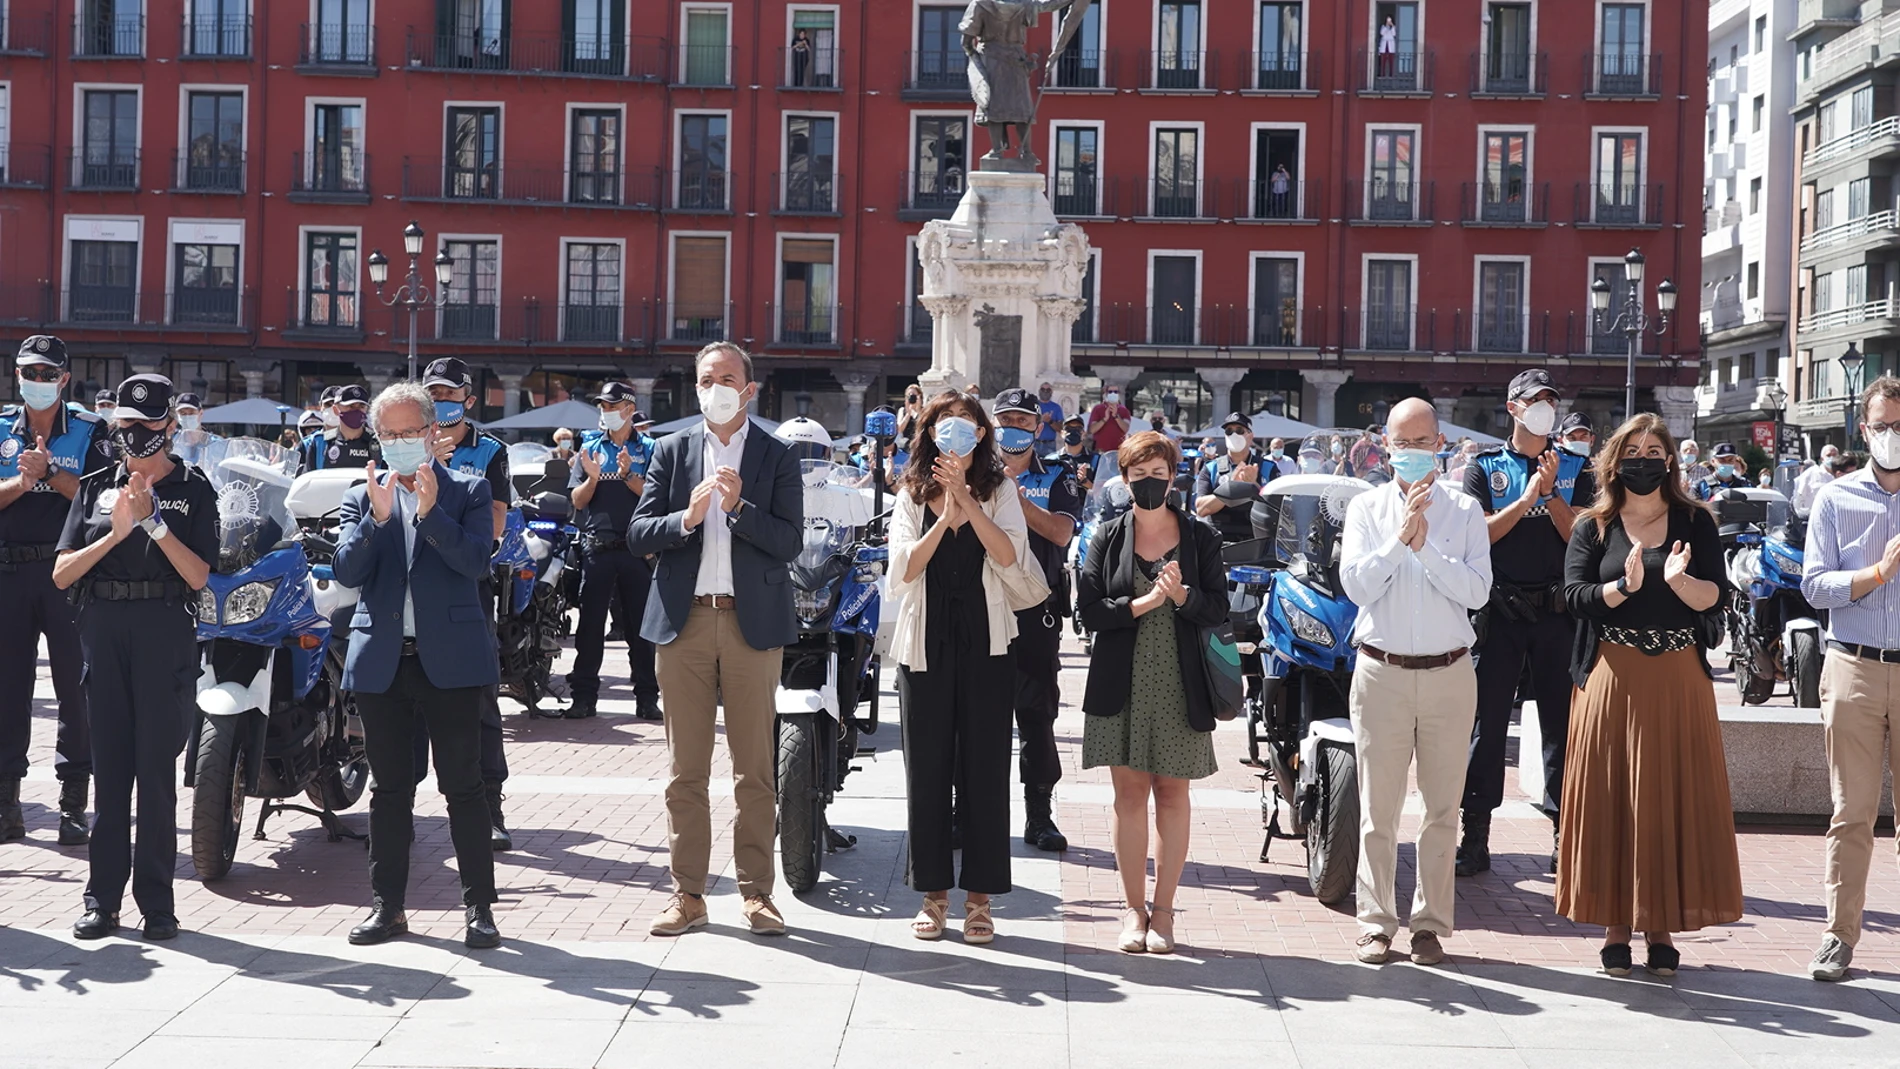 Minuto de silencio de Valladolid por el agente fallecido en acto de servicio